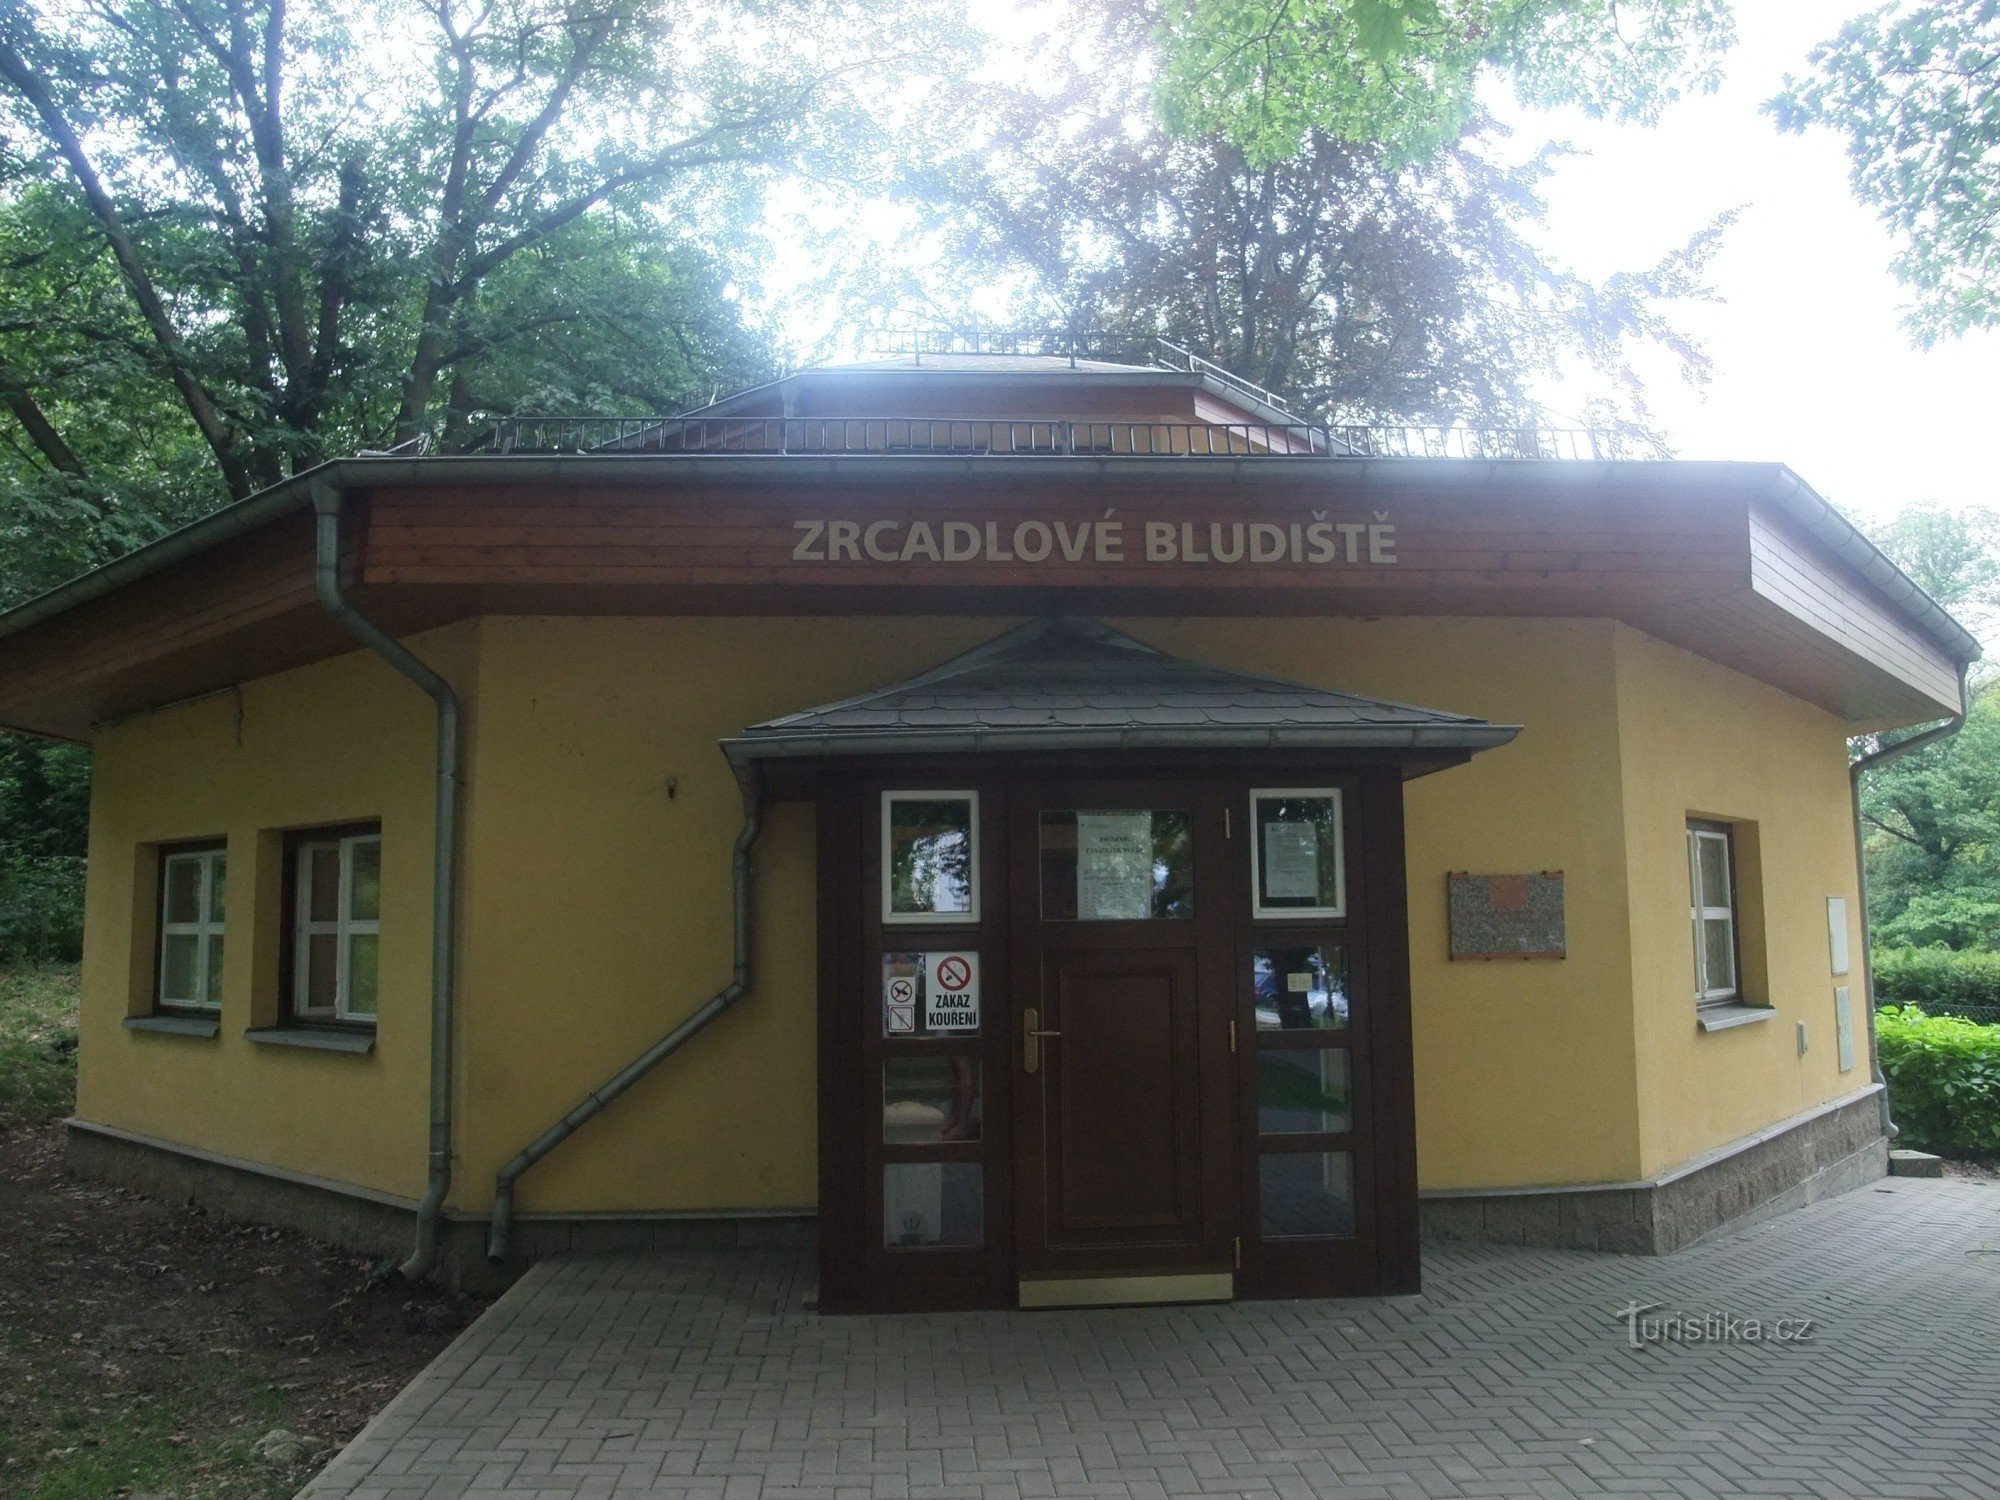 Gương và mê cung tự nhiên tại Větruša - Ústí nad Labem